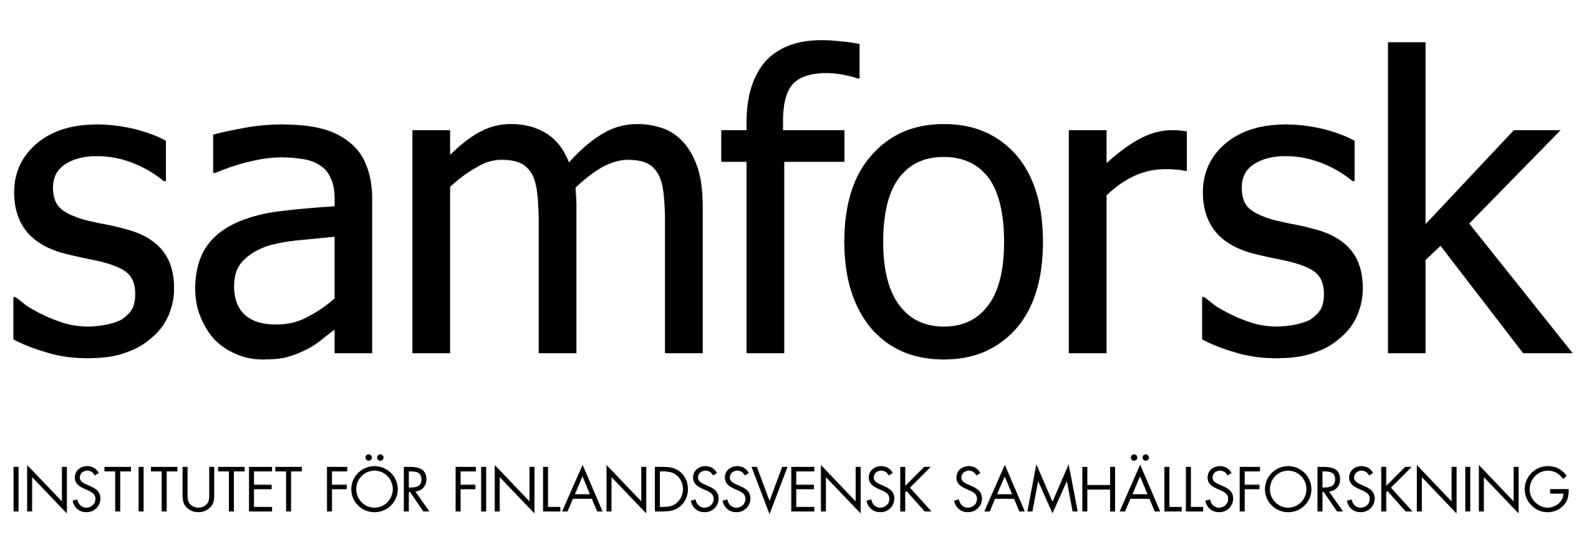 DEN ÅLÄNDSKA OCH FINLANDSSVENSKA VALUNDERSÖKNINGEN 2007 Bästa mottagare! Detta är en enkätundersökning om riksdagsvalet som hölls den 18 mars 2007.